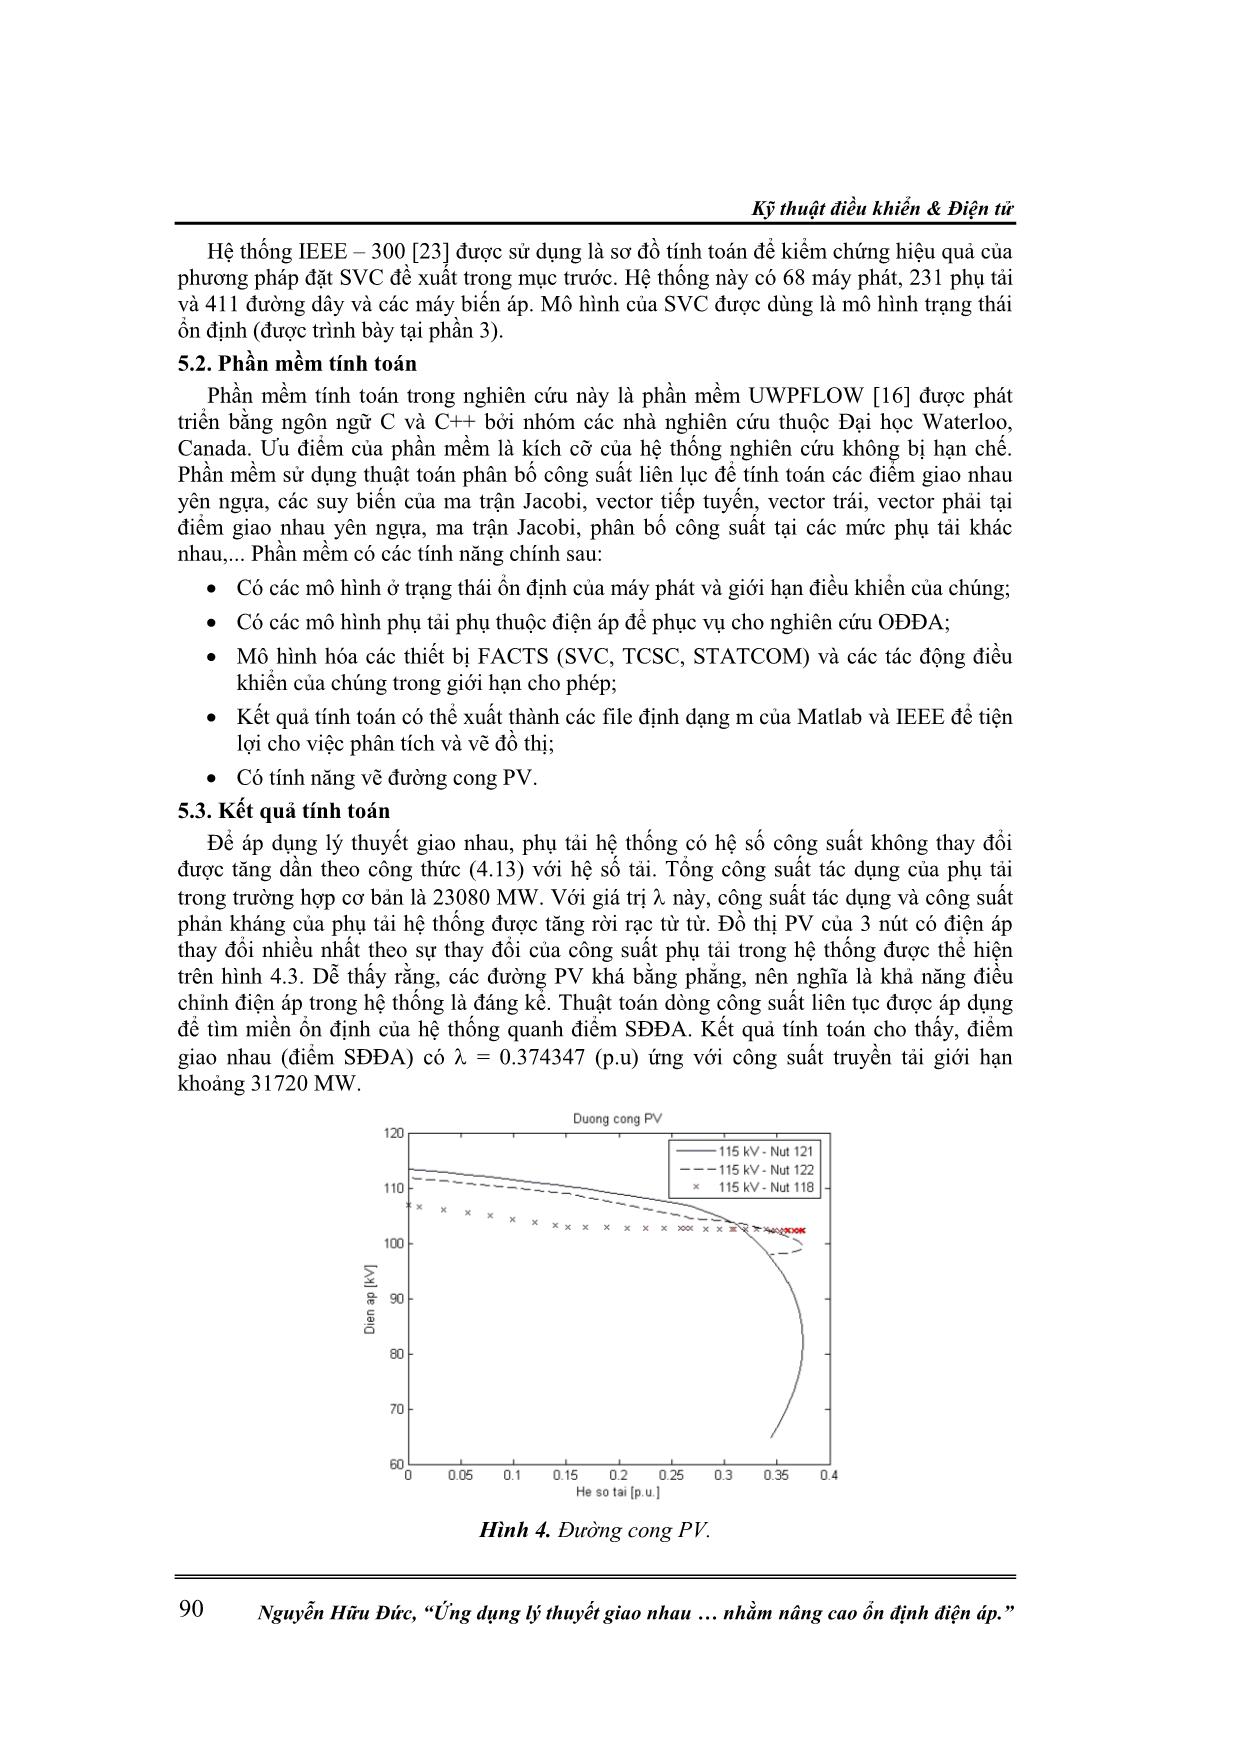 Ứng dụng lý thuyết giao nhau điểm yên ngựa xác định vị trí đặt svc nhằm nâng cao ổn định điện áp trang 9